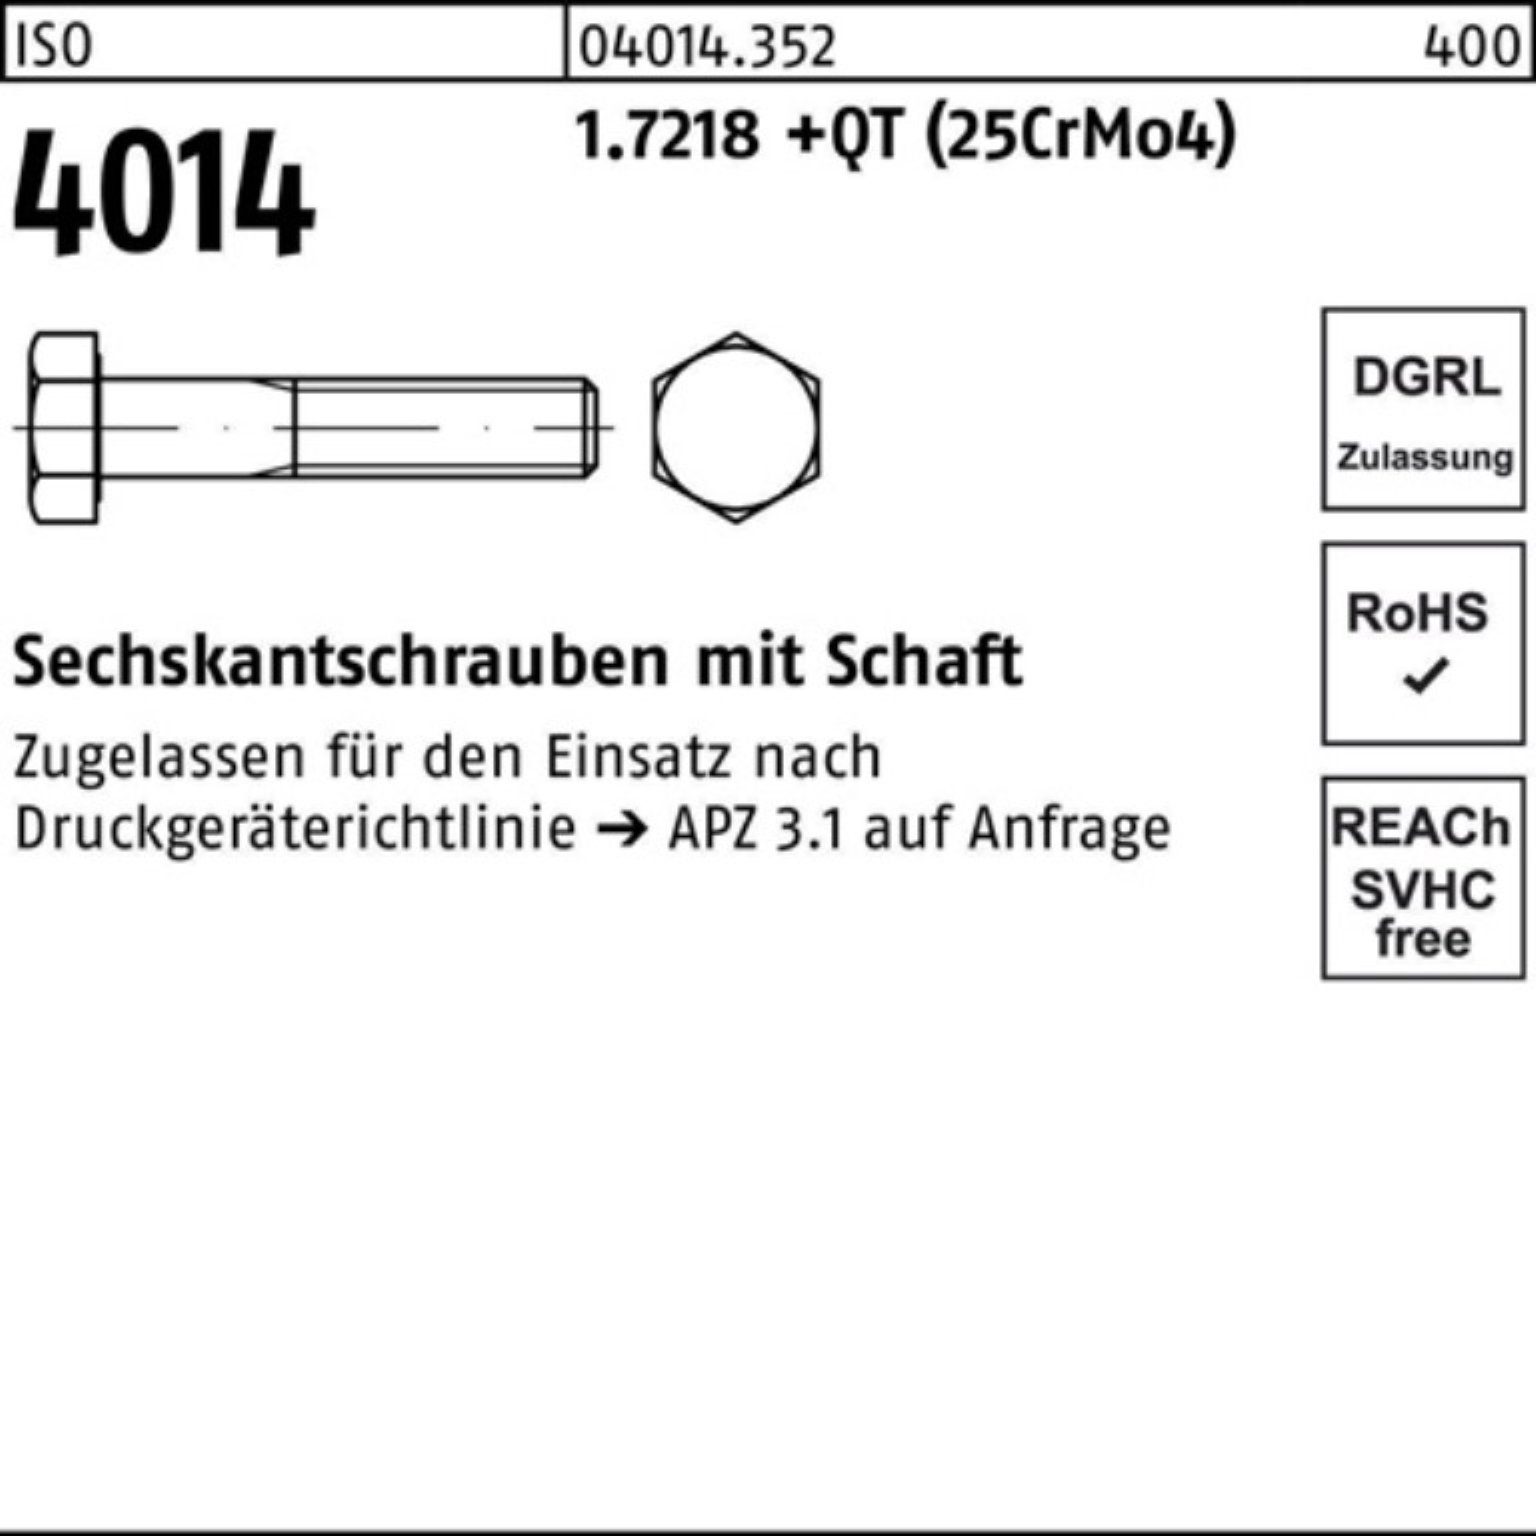 Sechskantschraube Bufab (25Cr Schaft Pack 4014 ISO 140 M20x +QT 100er 1.7218 Sechskantschraube